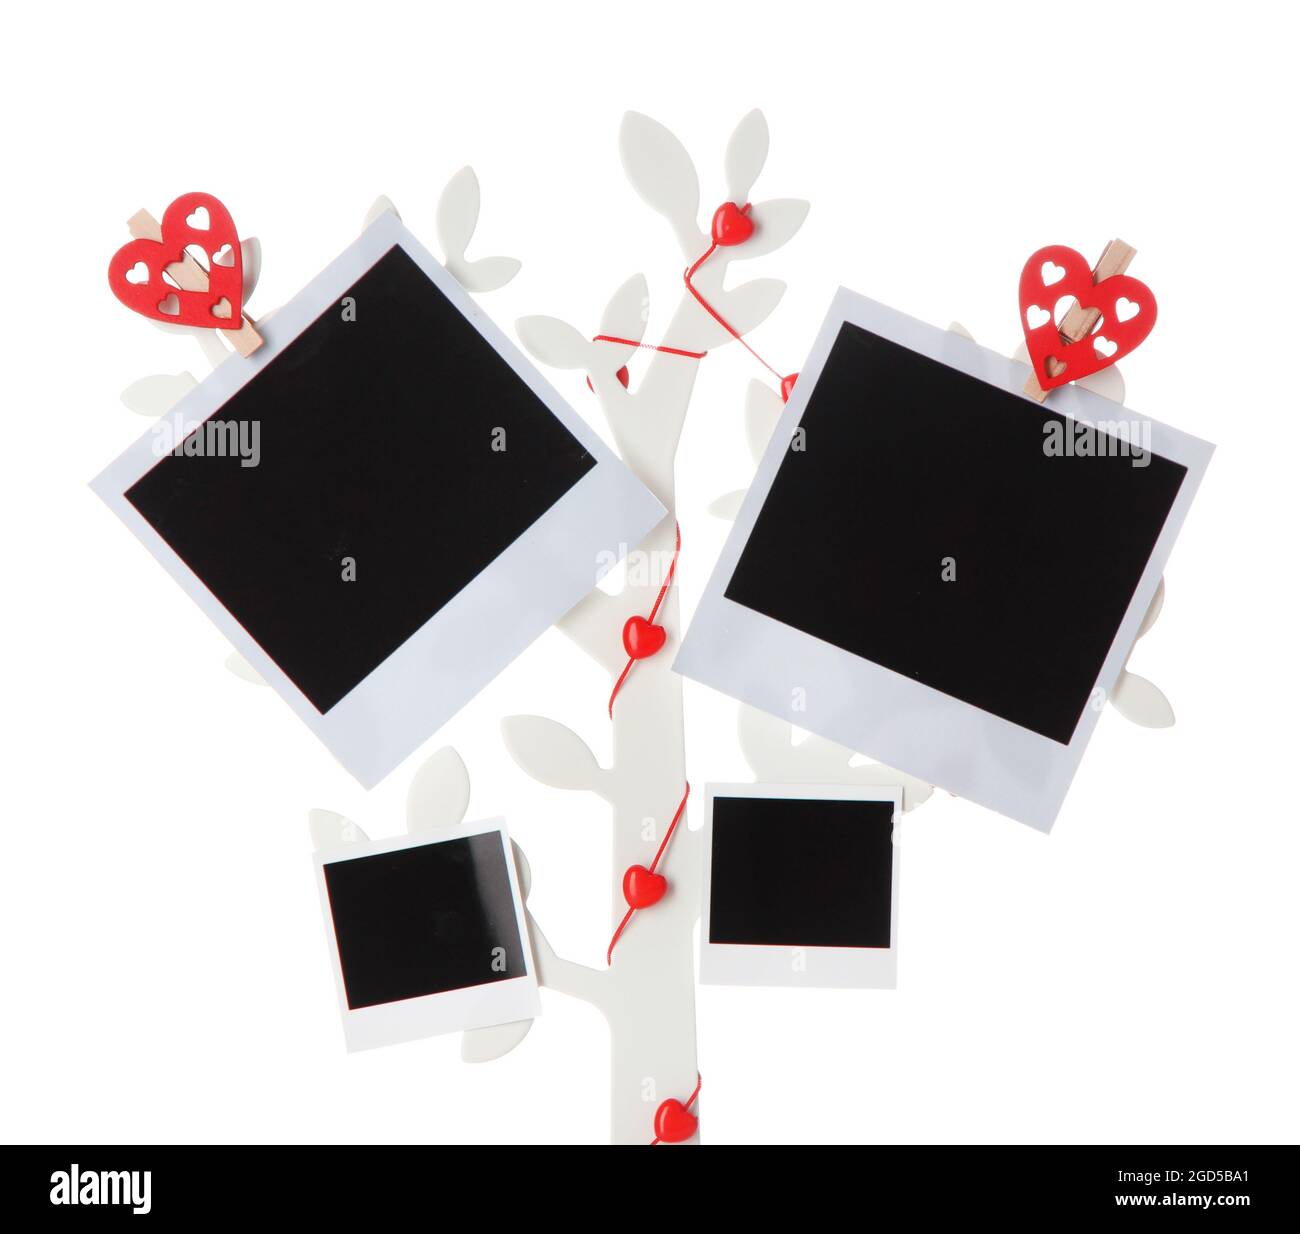 Supporto in forma di albero con schede fotografiche istantanee isolate su  bianco Foto stock - Alamy